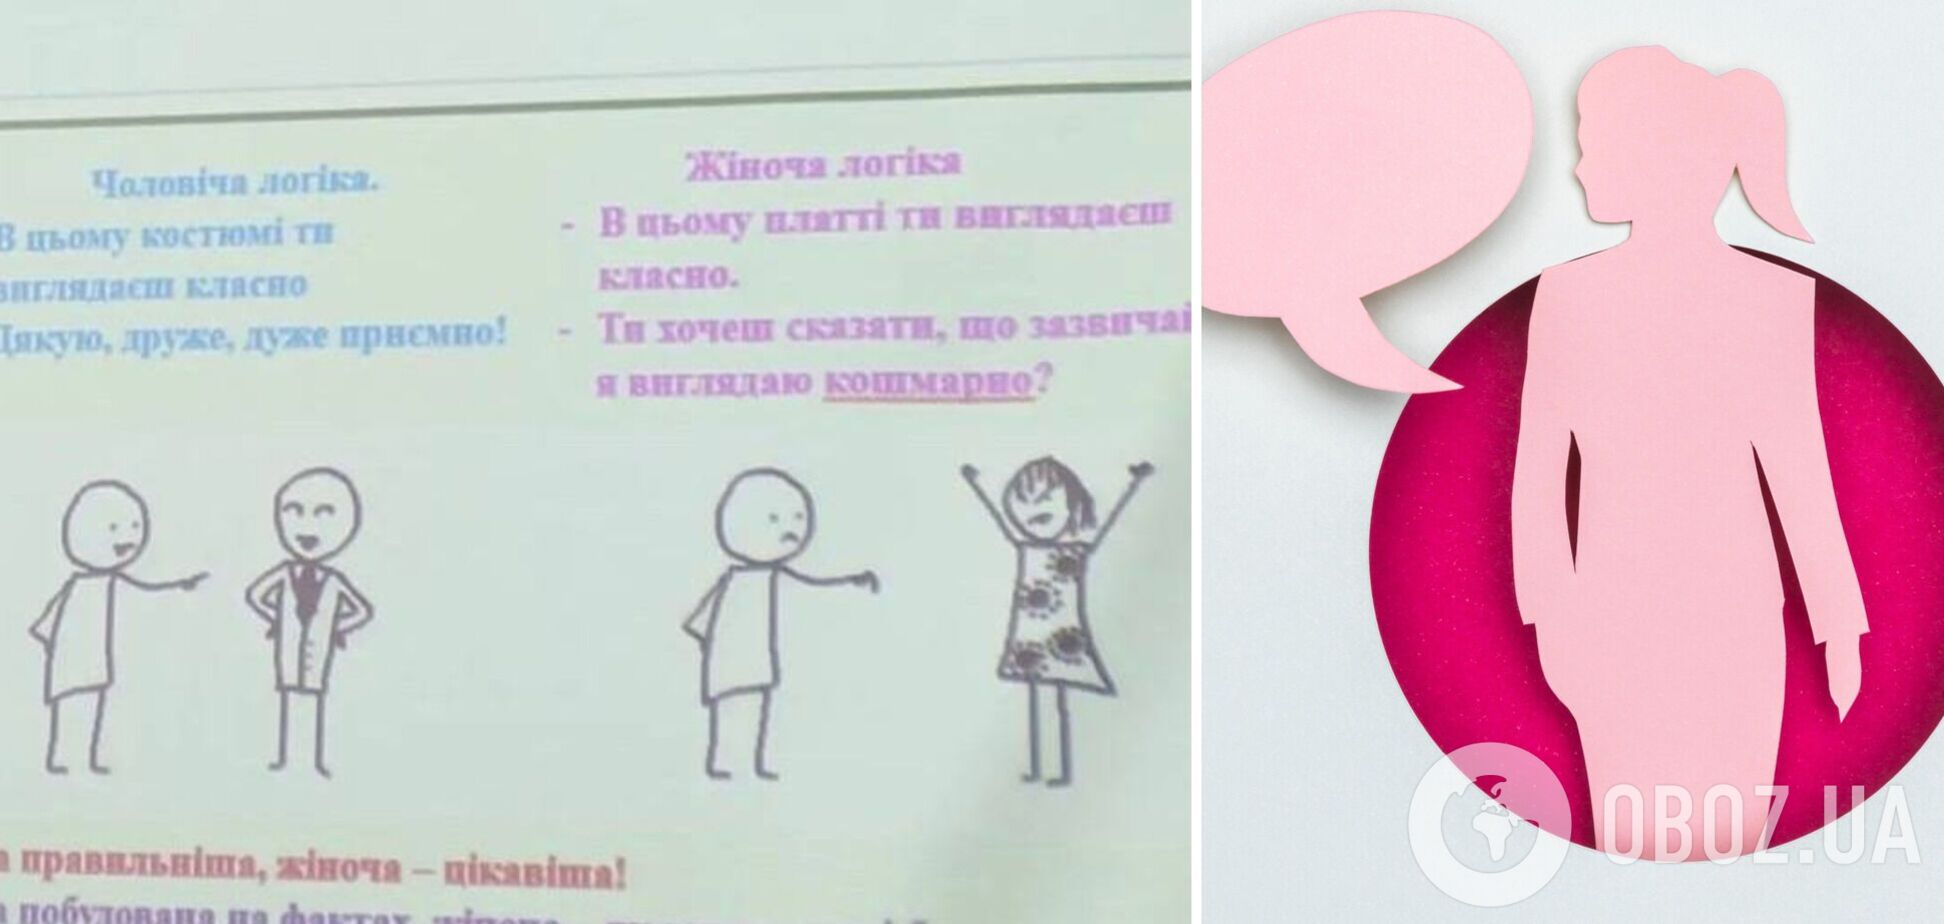 Преподаватель вуза в Тернополе на паре рассказывал, что 'девушки сами провоцируют изнасилование', и насмехался над женской логикой.